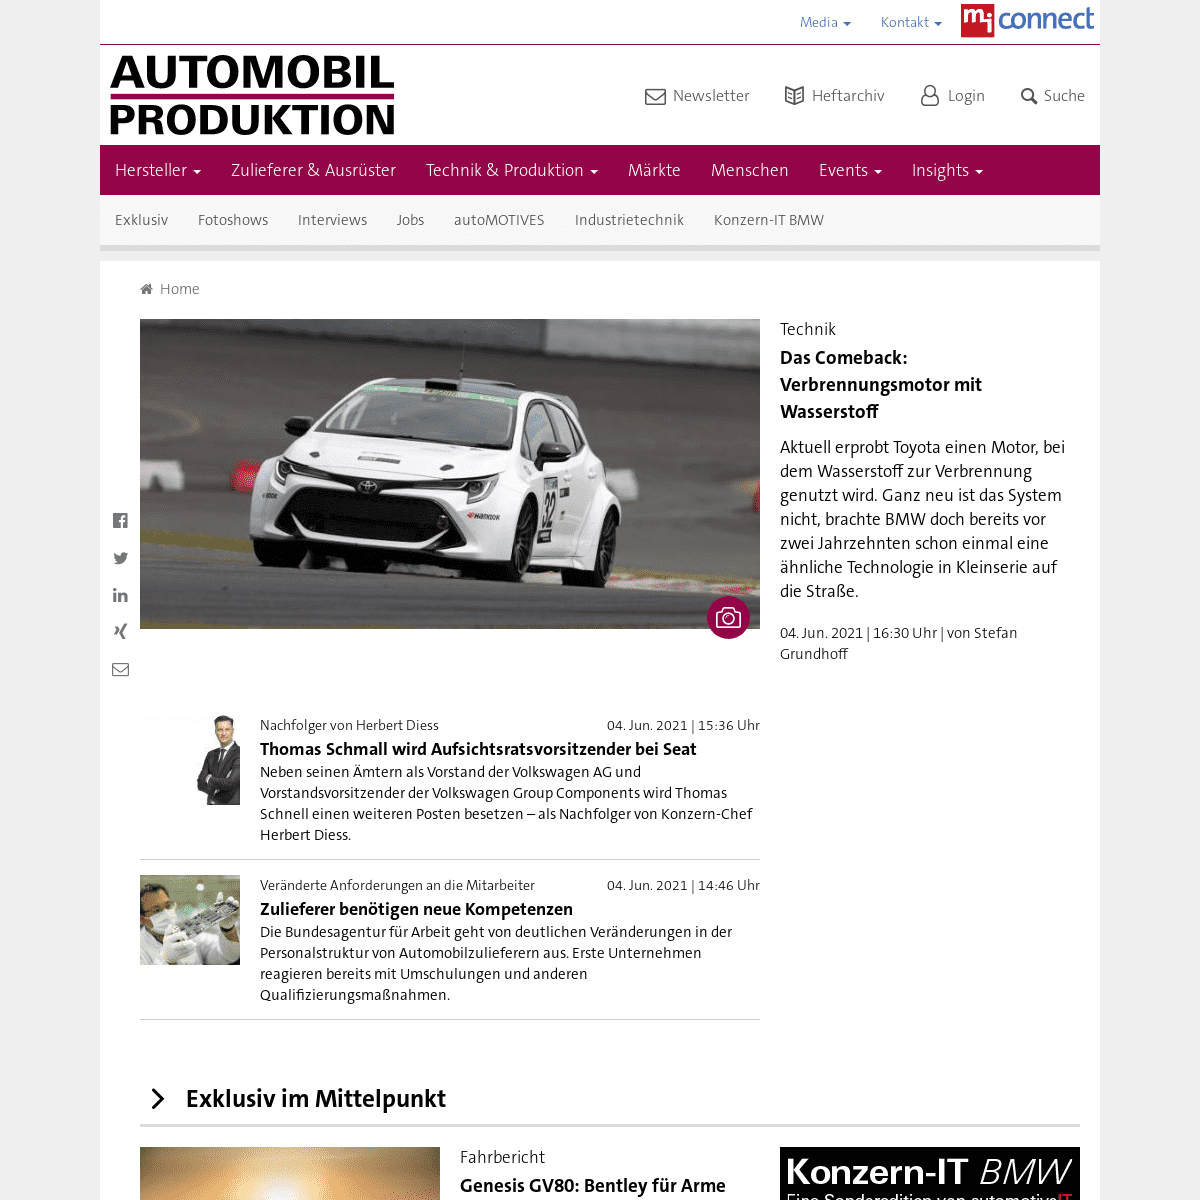 A complete backup of https://automobil-produktion.de